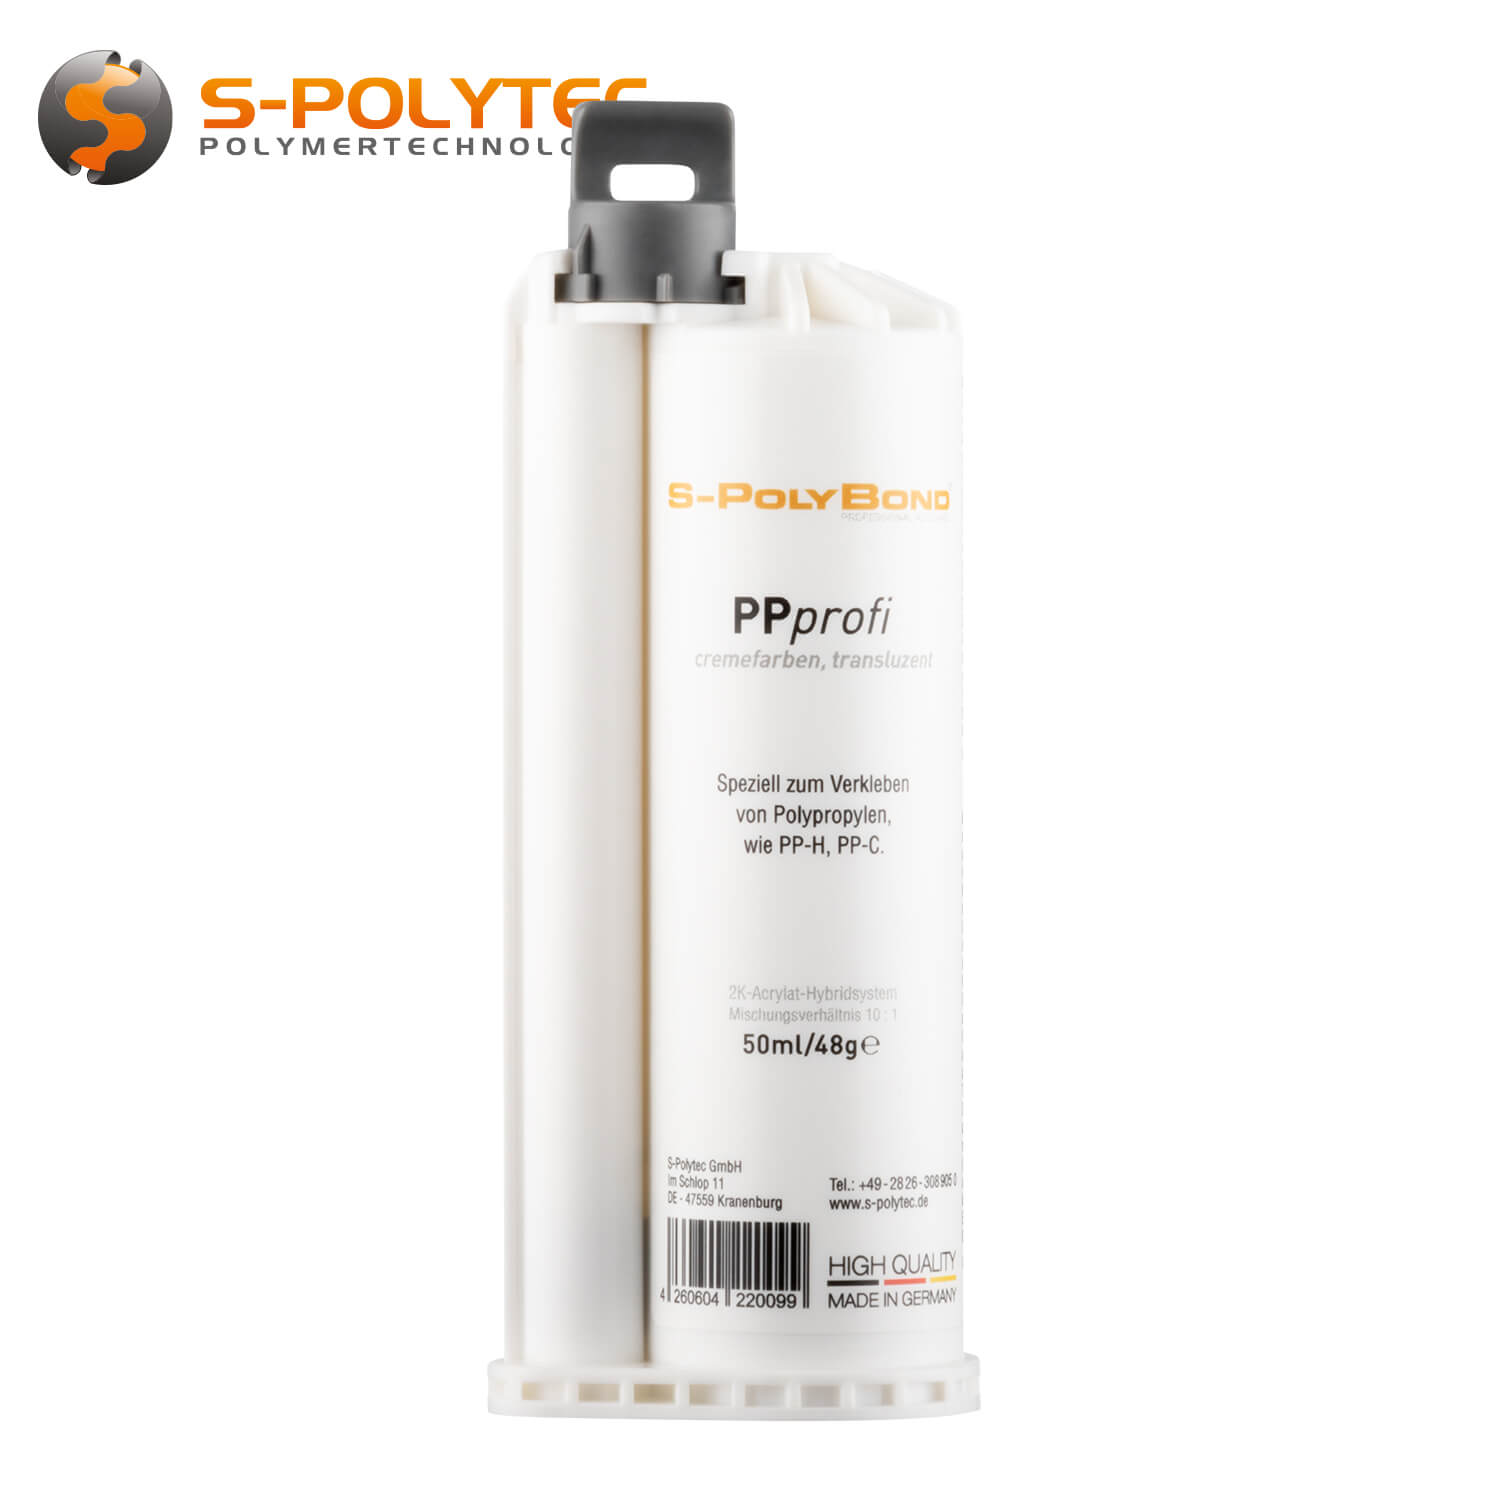 Adhesive Polypropylene